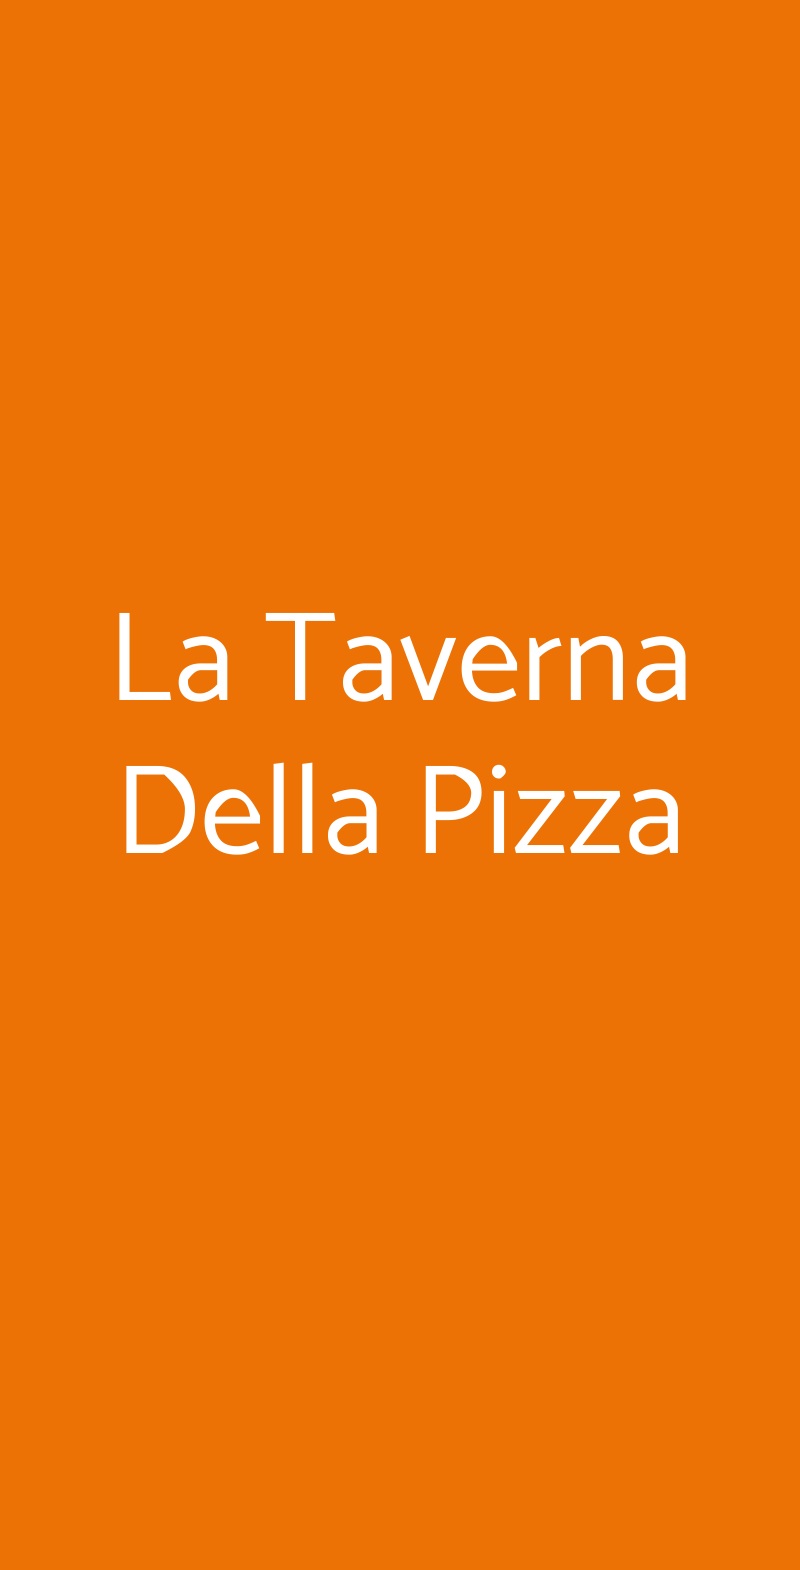 La Taverna Della Pizza Roma menù 1 pagina